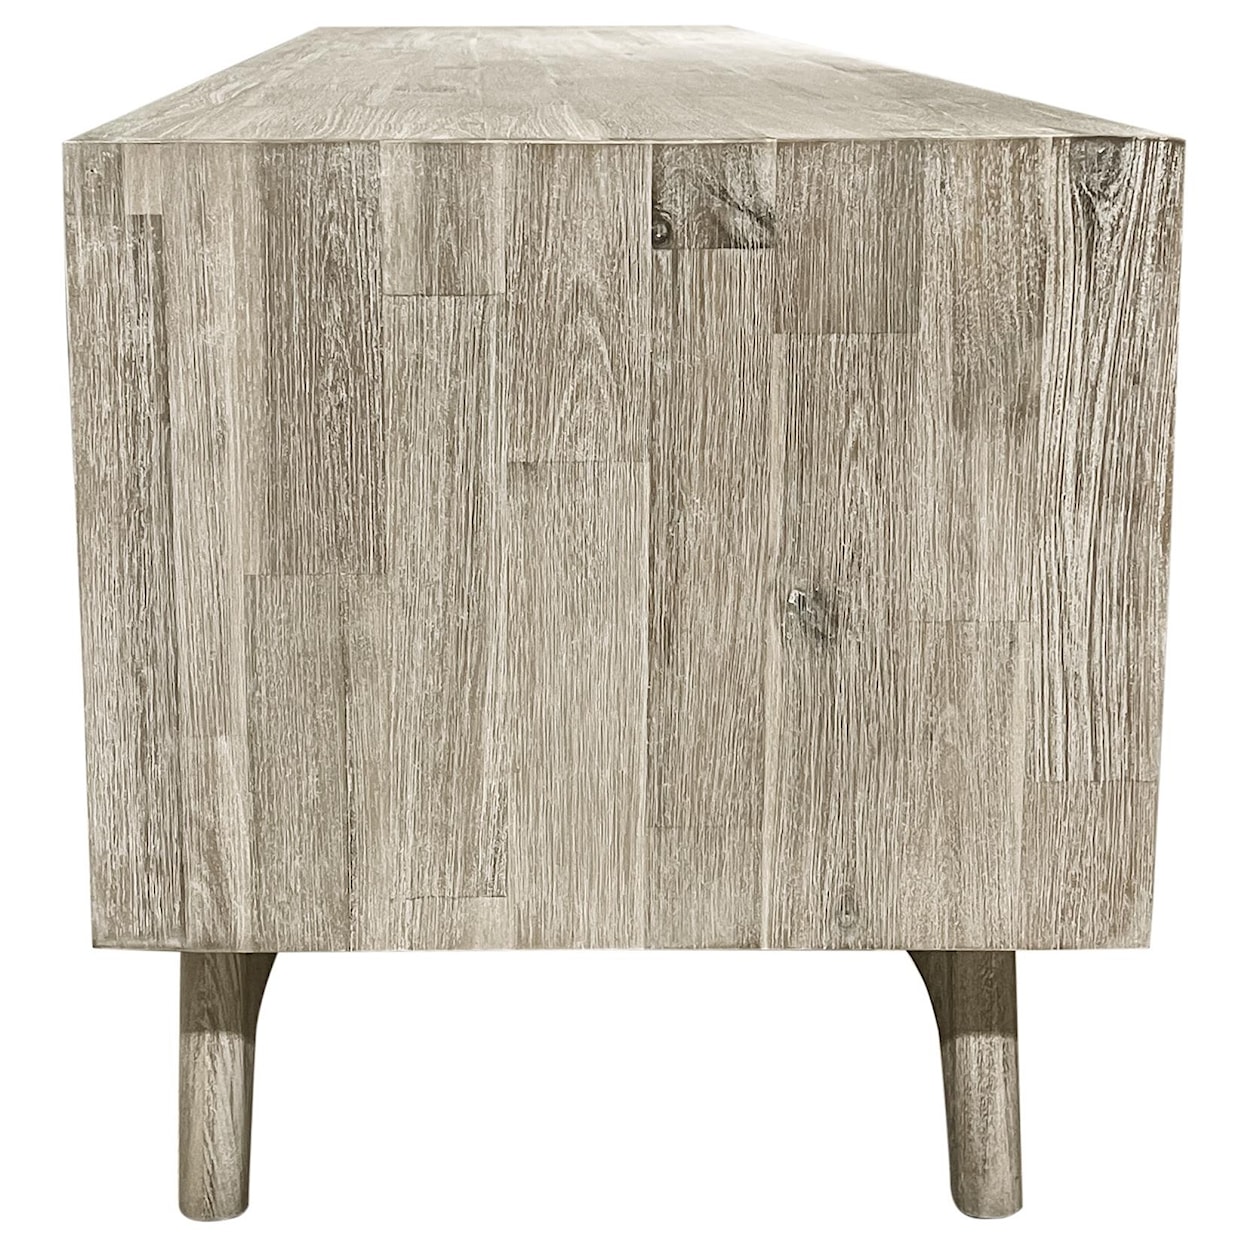 Design Evolution Sage DE-SAG-L01-165 TV Stand | HomeWorld Furniture ...